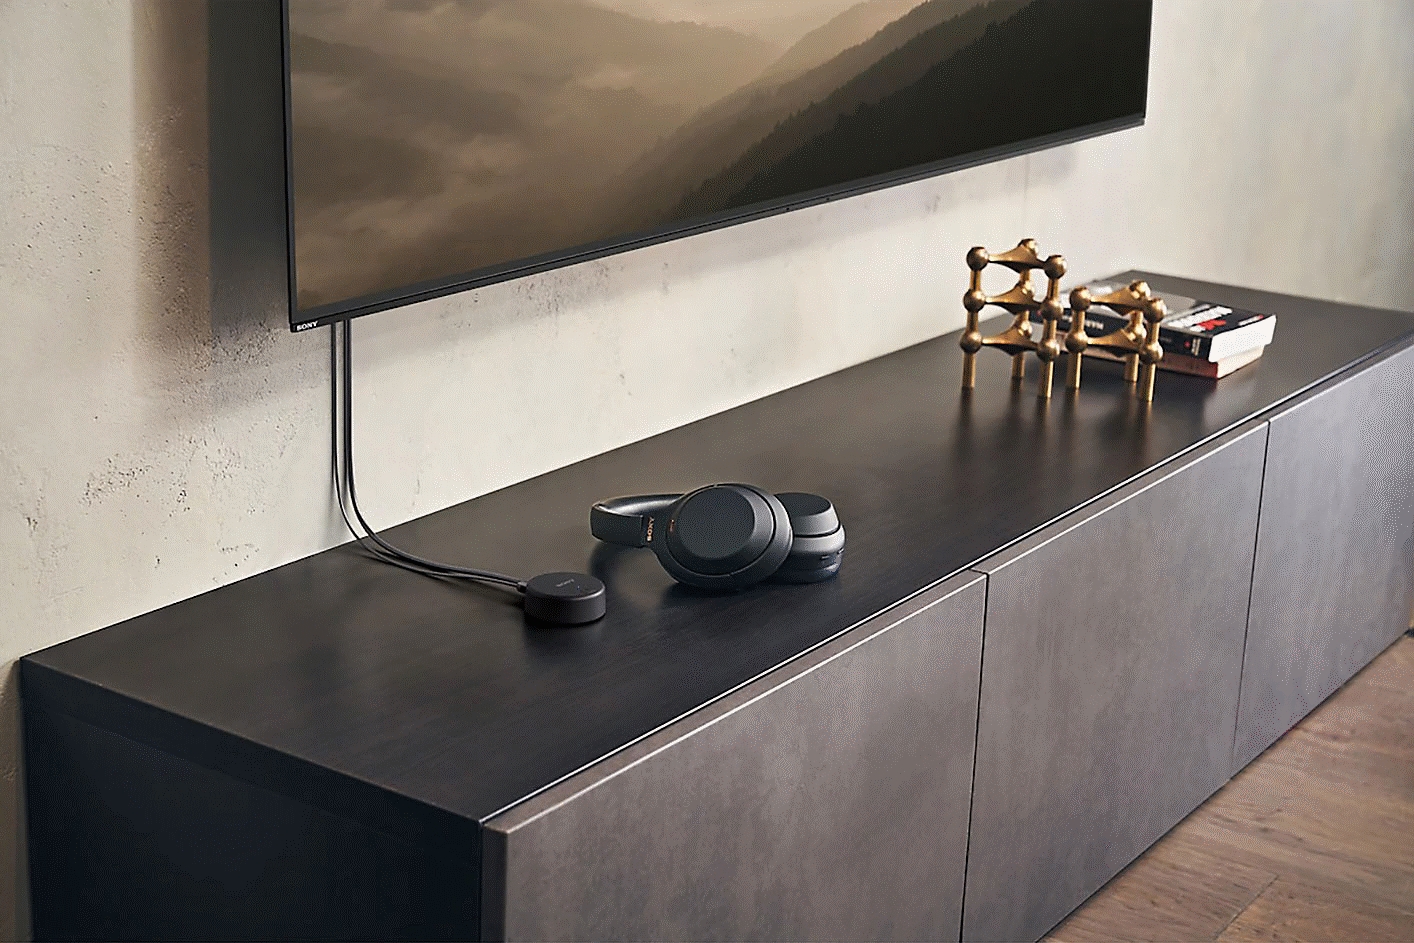 Snímek černých sluchátek Sony WH-CH520 na televizní jednotce pod připevněným televizorem